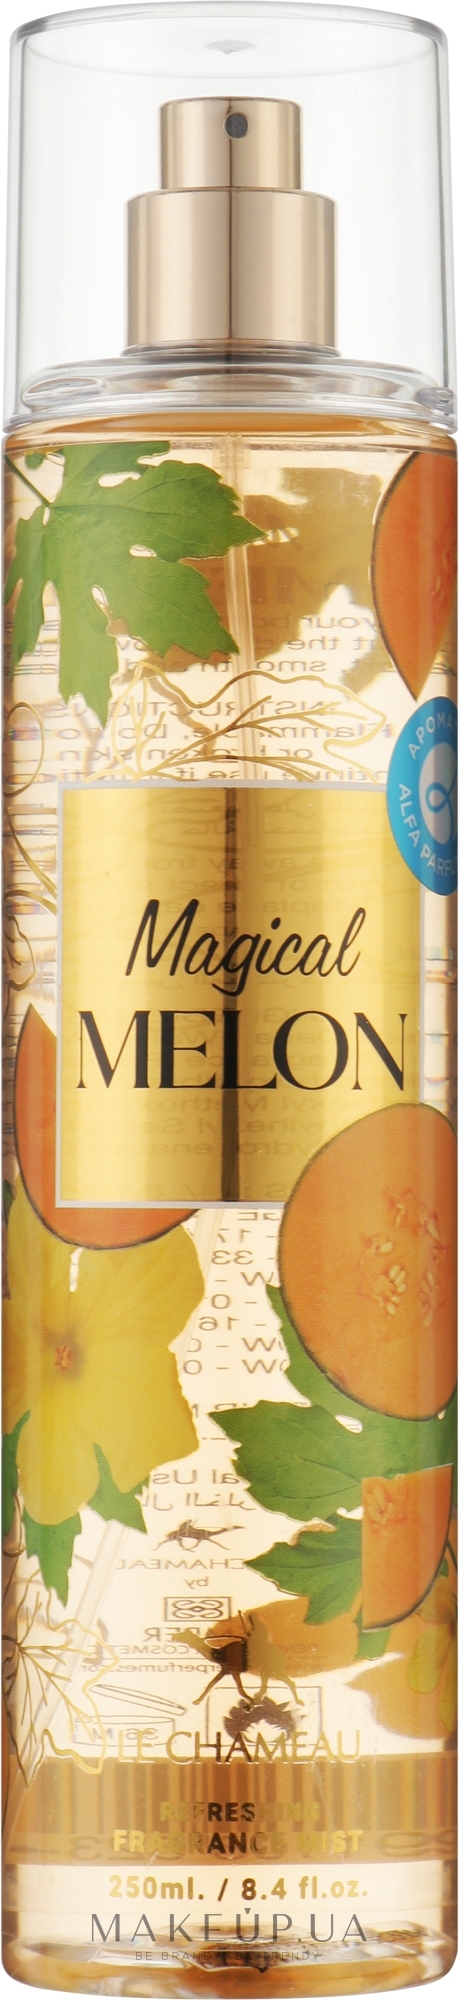 Мист для тела - Le Chameau Magical Melon Fruity Body Mist — фото 250ml